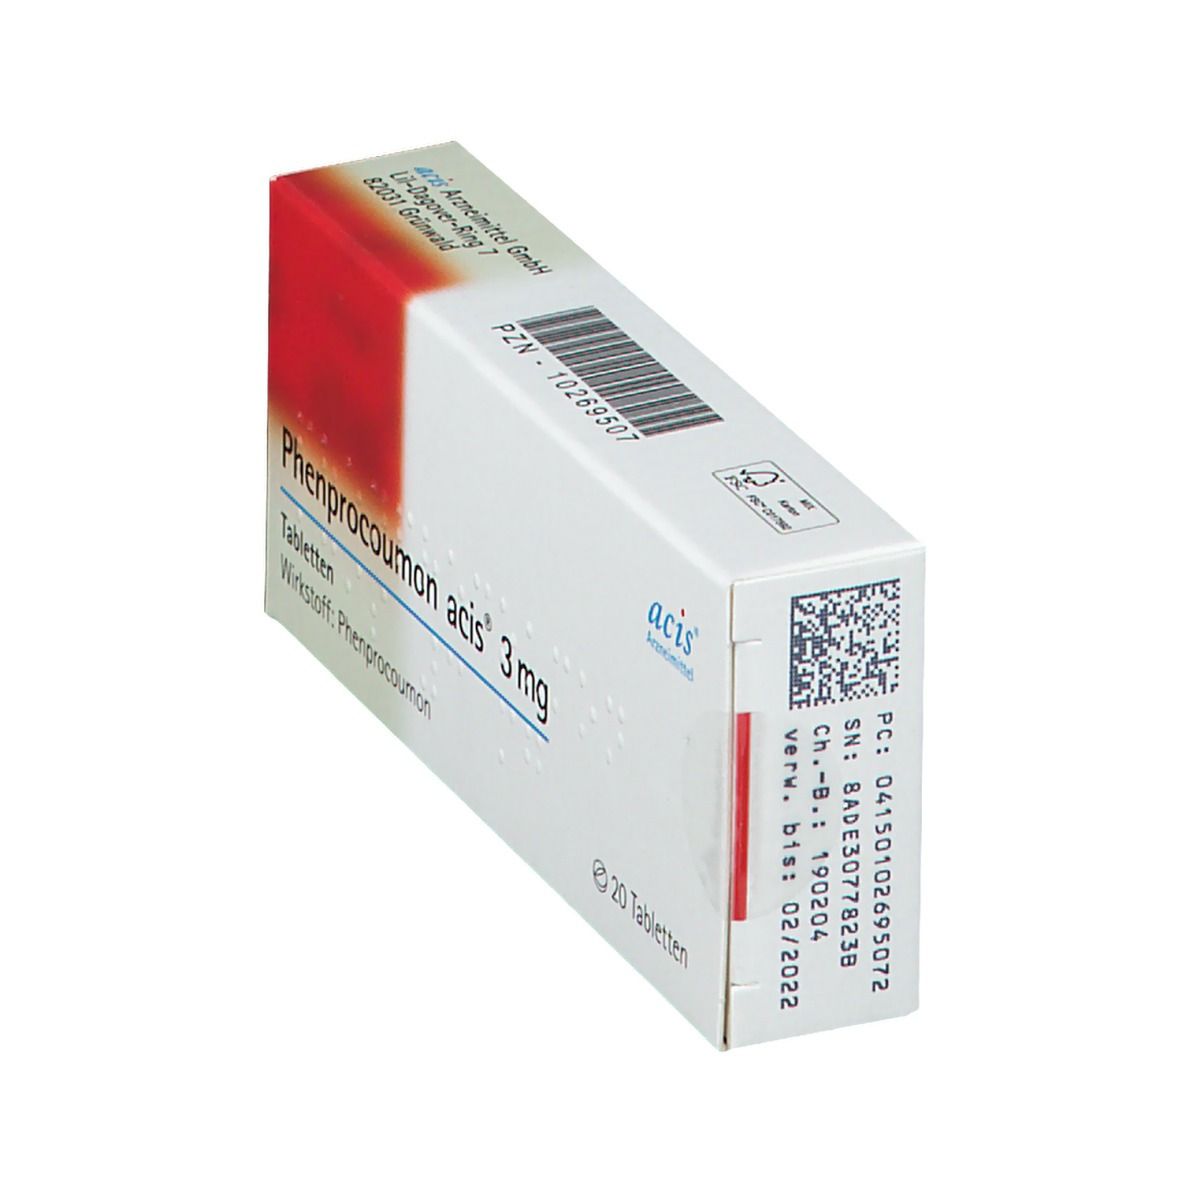 Phenprocoumon acis® 3 mg